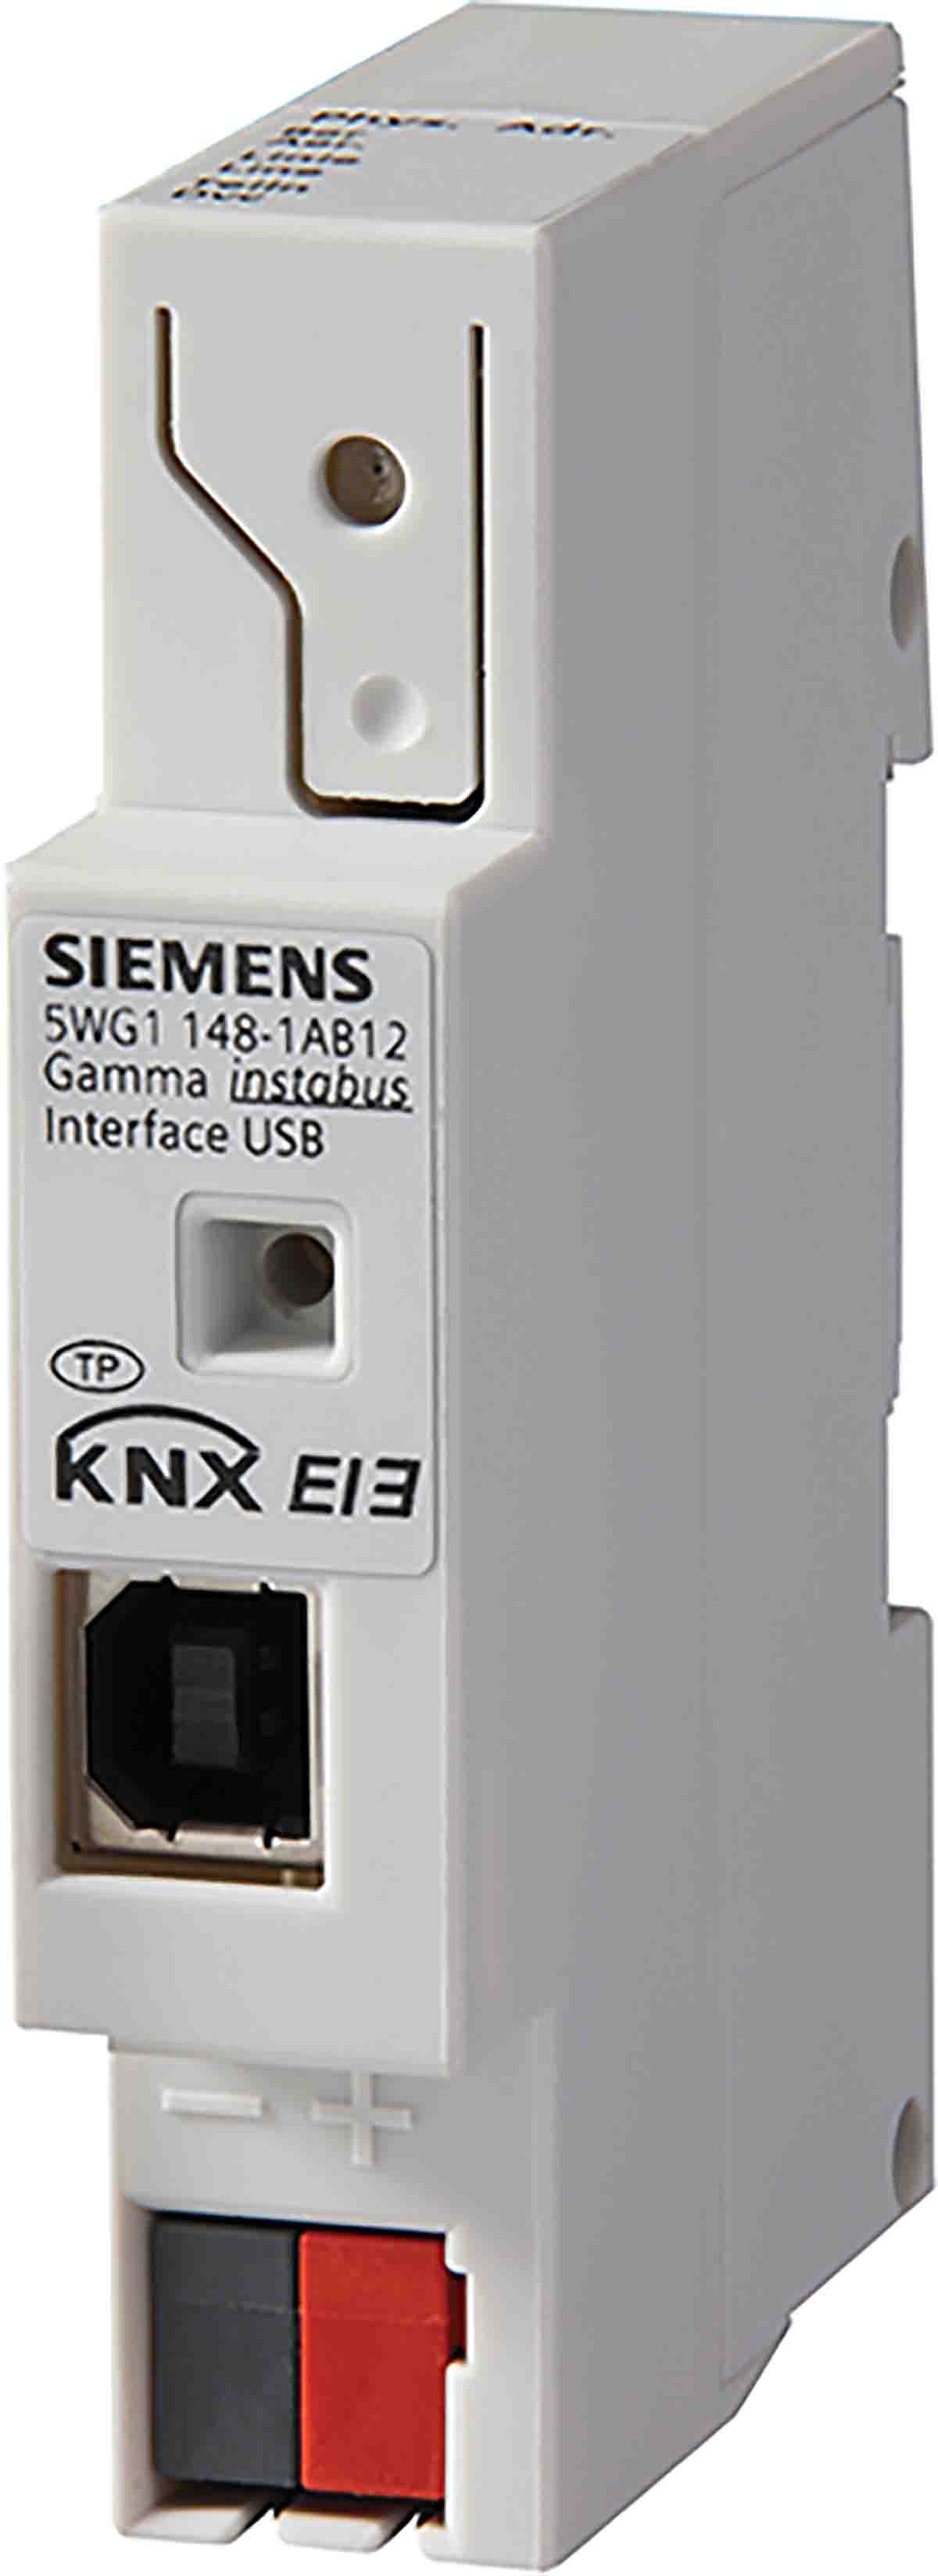 Interfaz USB, Siemens, 5WG1148-1AB12